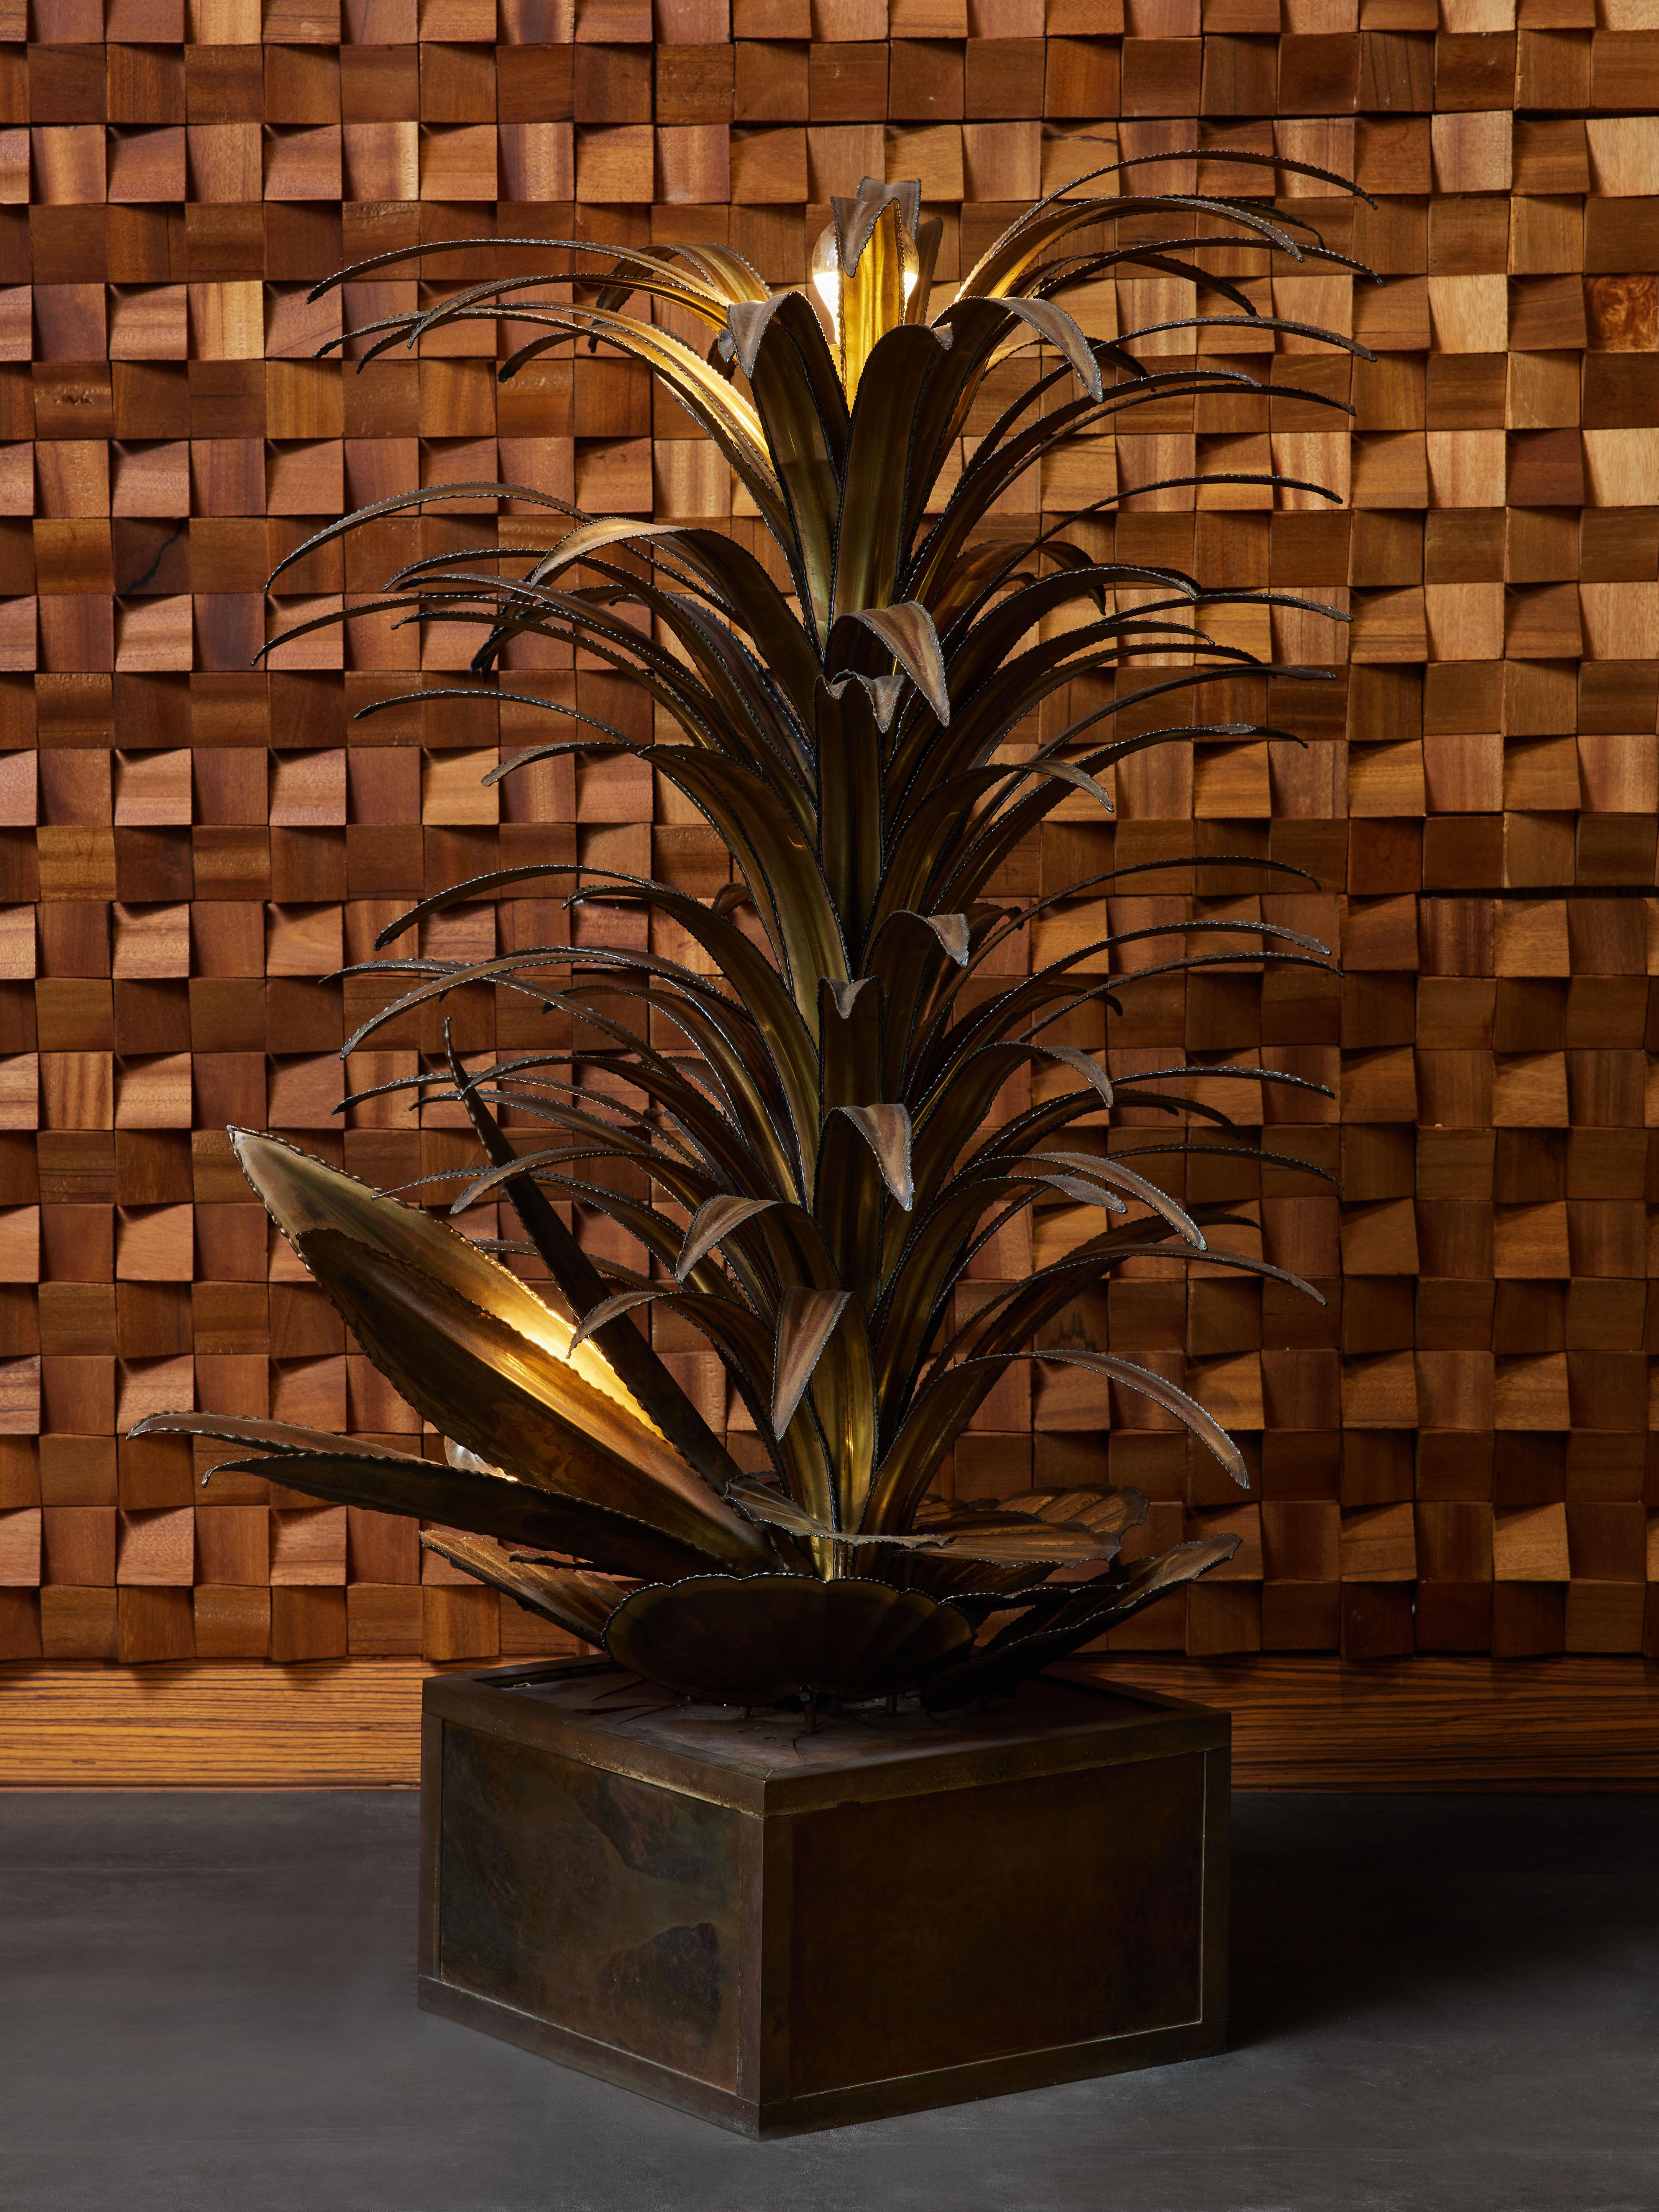 Kleine Stehleuchte von Maison Jansen, bestehend aus einem quadratischen Sockel aus Messing und Harz, Seerosen aus Messing und zwei weiteren tropischen Pflanzen, die jeweils eine Lichtquelle halten.